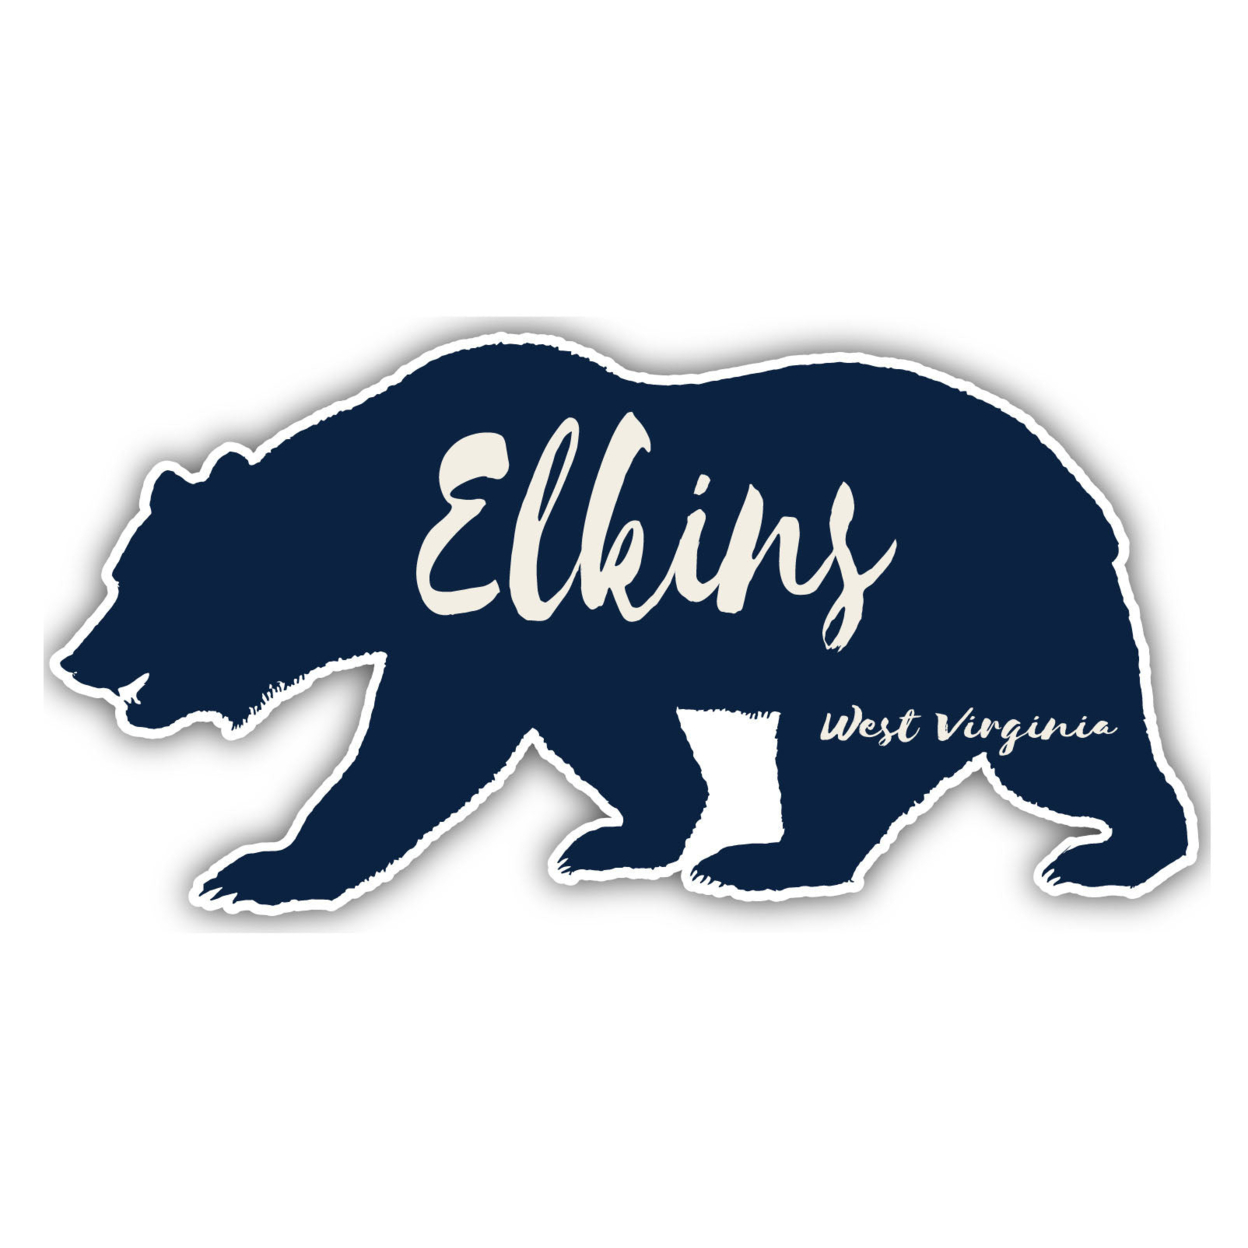 Elkins West Virginia Souvenir Decorative Stickers (Choose Theme And Size) - Single Unit, 2-Inch, Tent